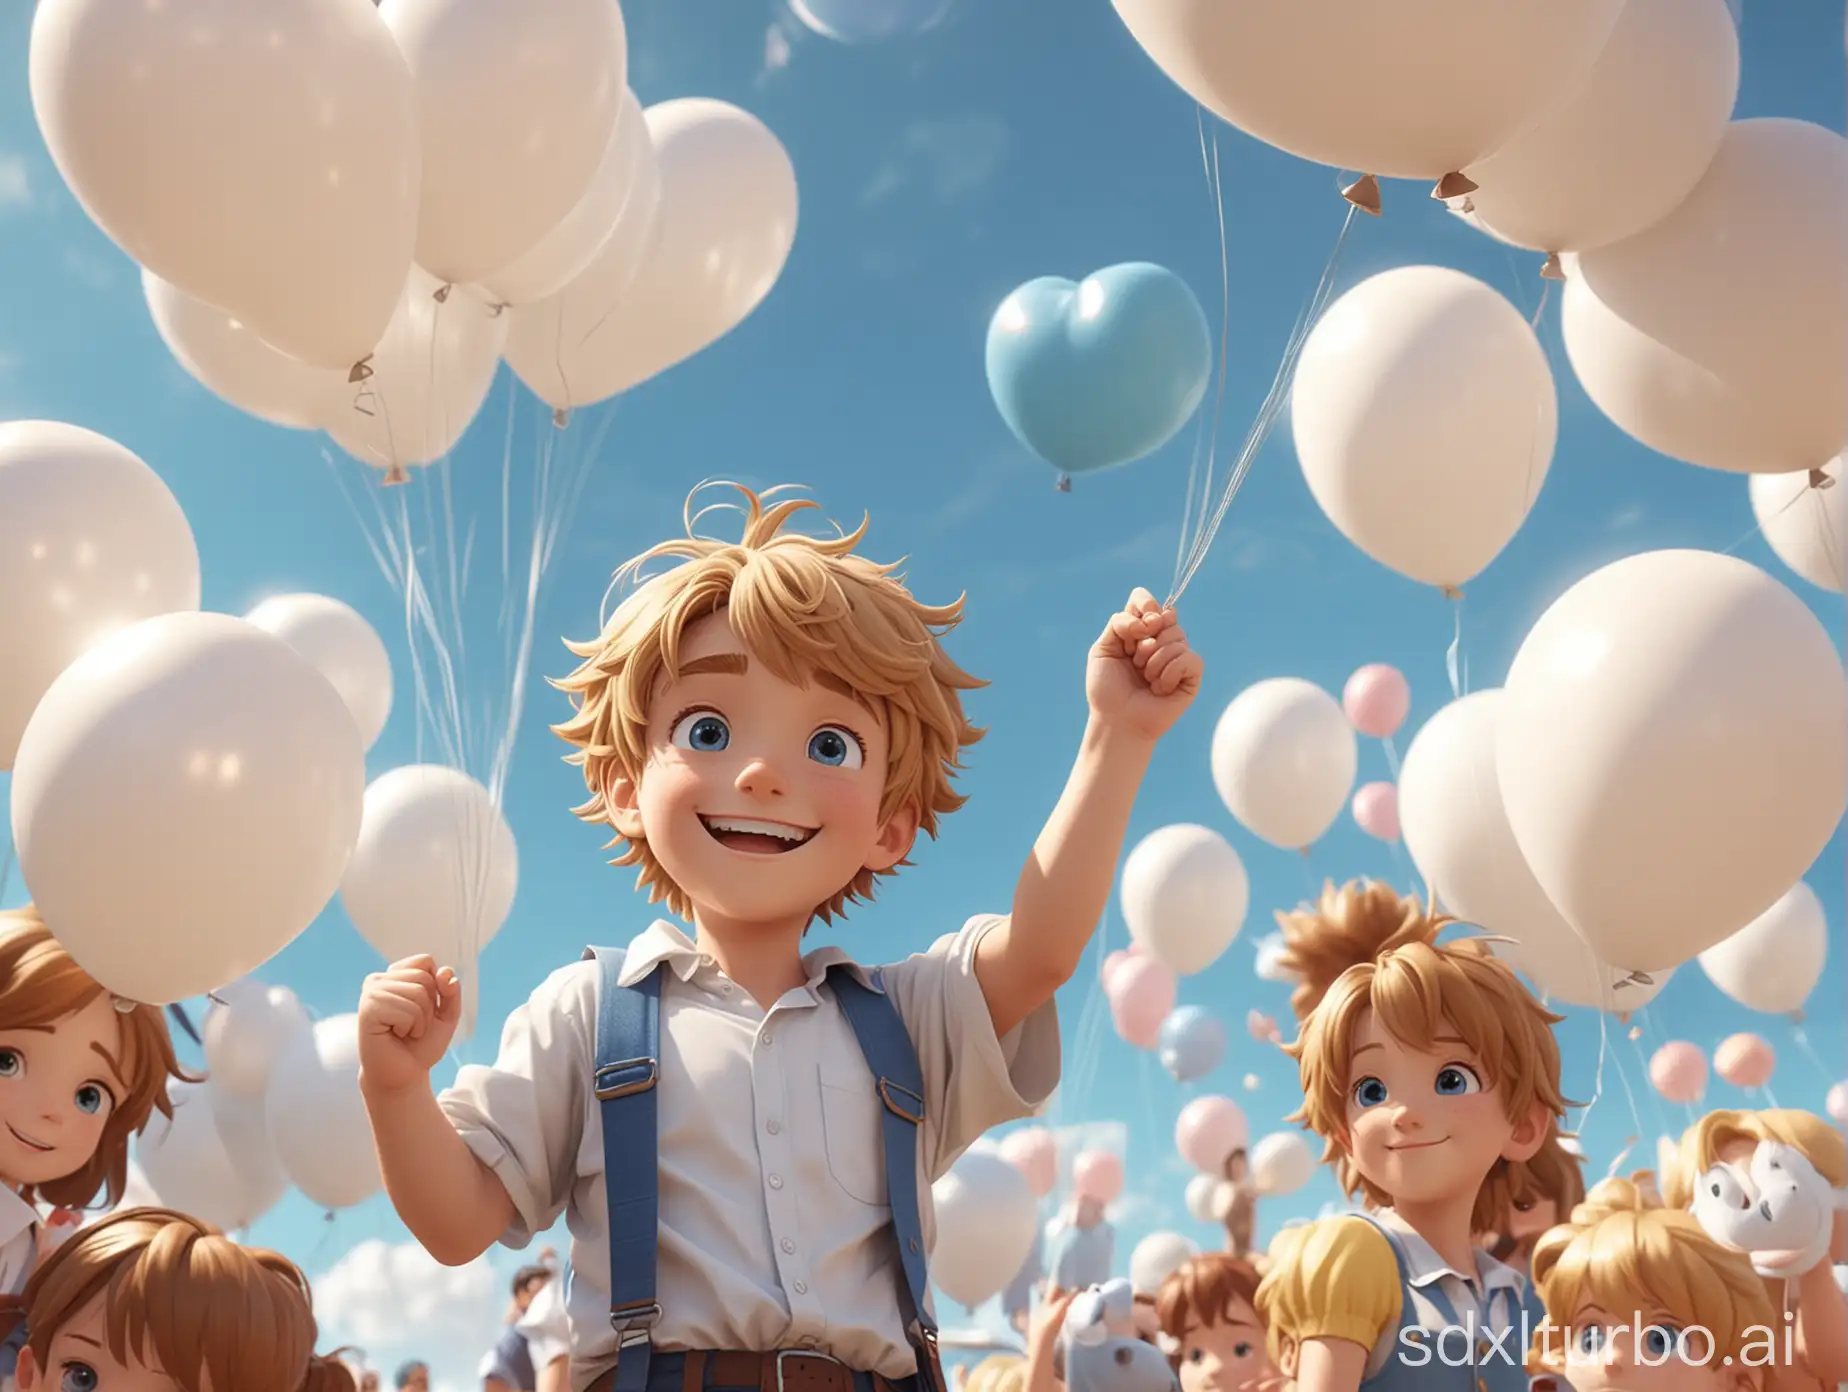 Joyful-Boy-in-Balloon-Castle-Fantasy-Dreamy-Adventure-in-Anime-Style